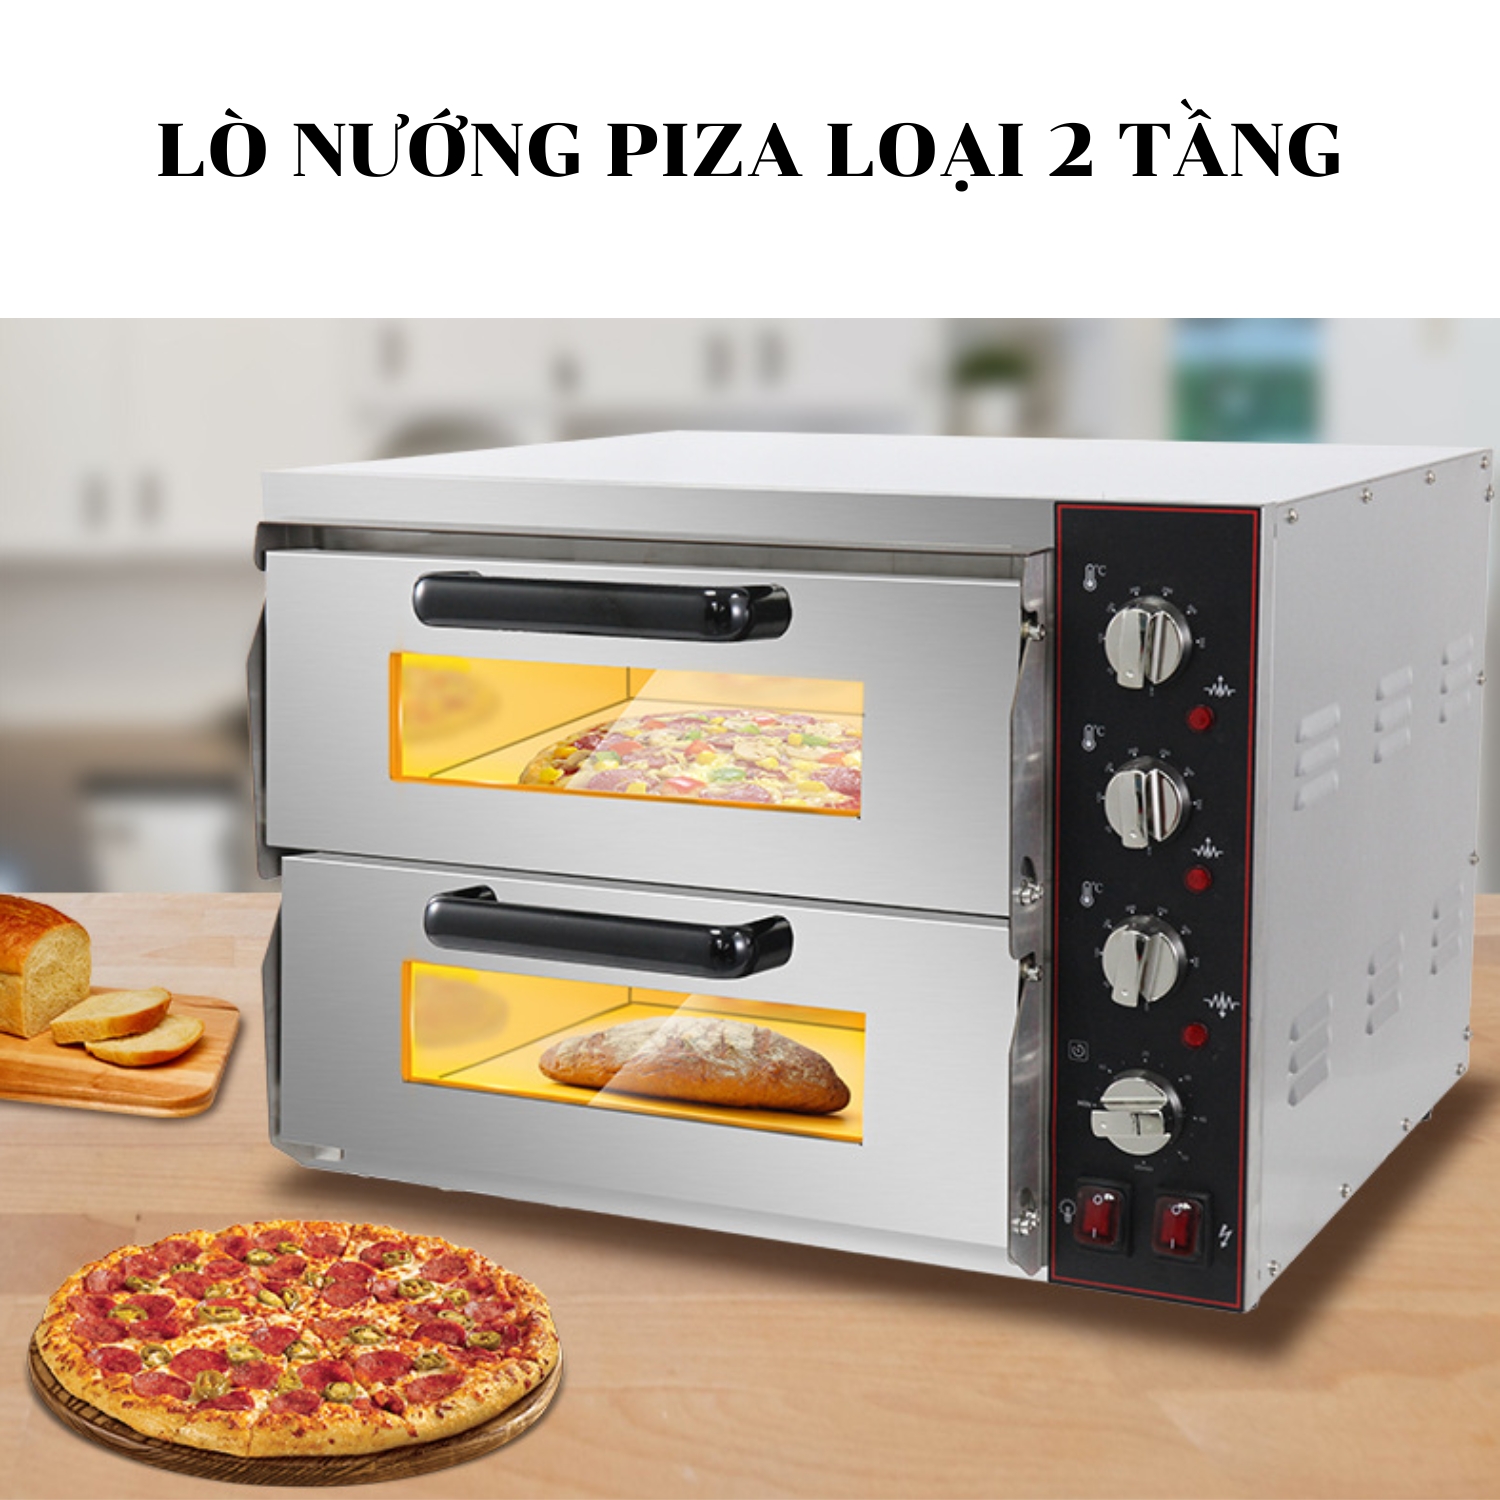 Tìm hiểu lò nướng pizza 2 tầng mini loại chuyên dụng